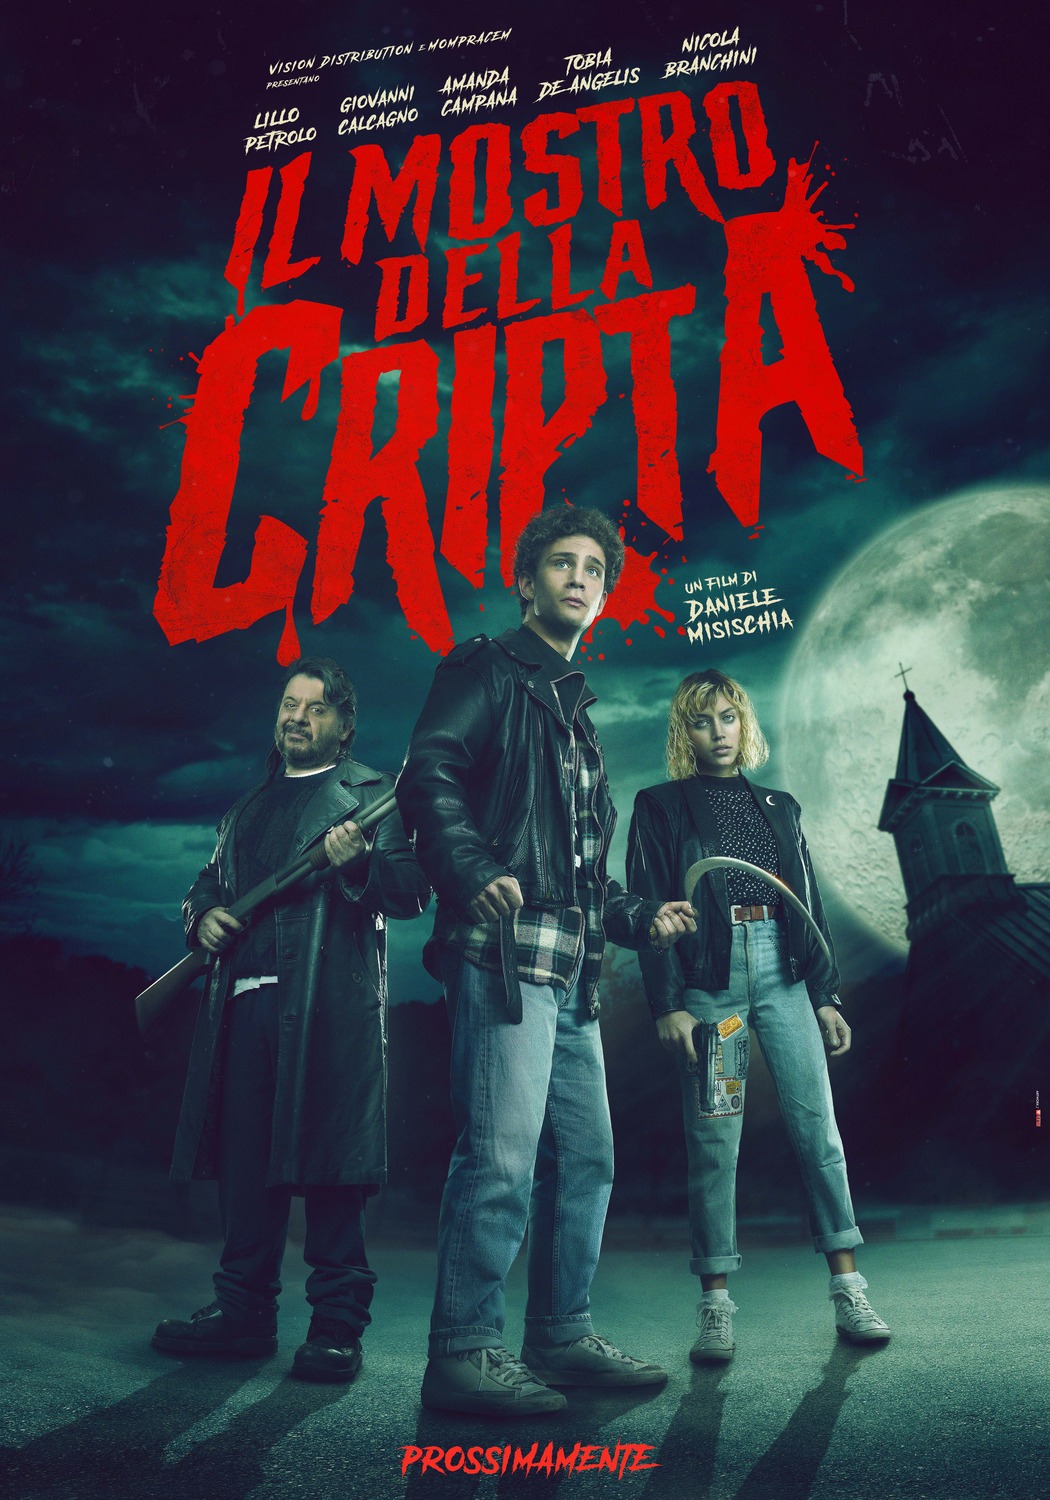 Extra Large Movie Poster Image for Il mostro della cripta 